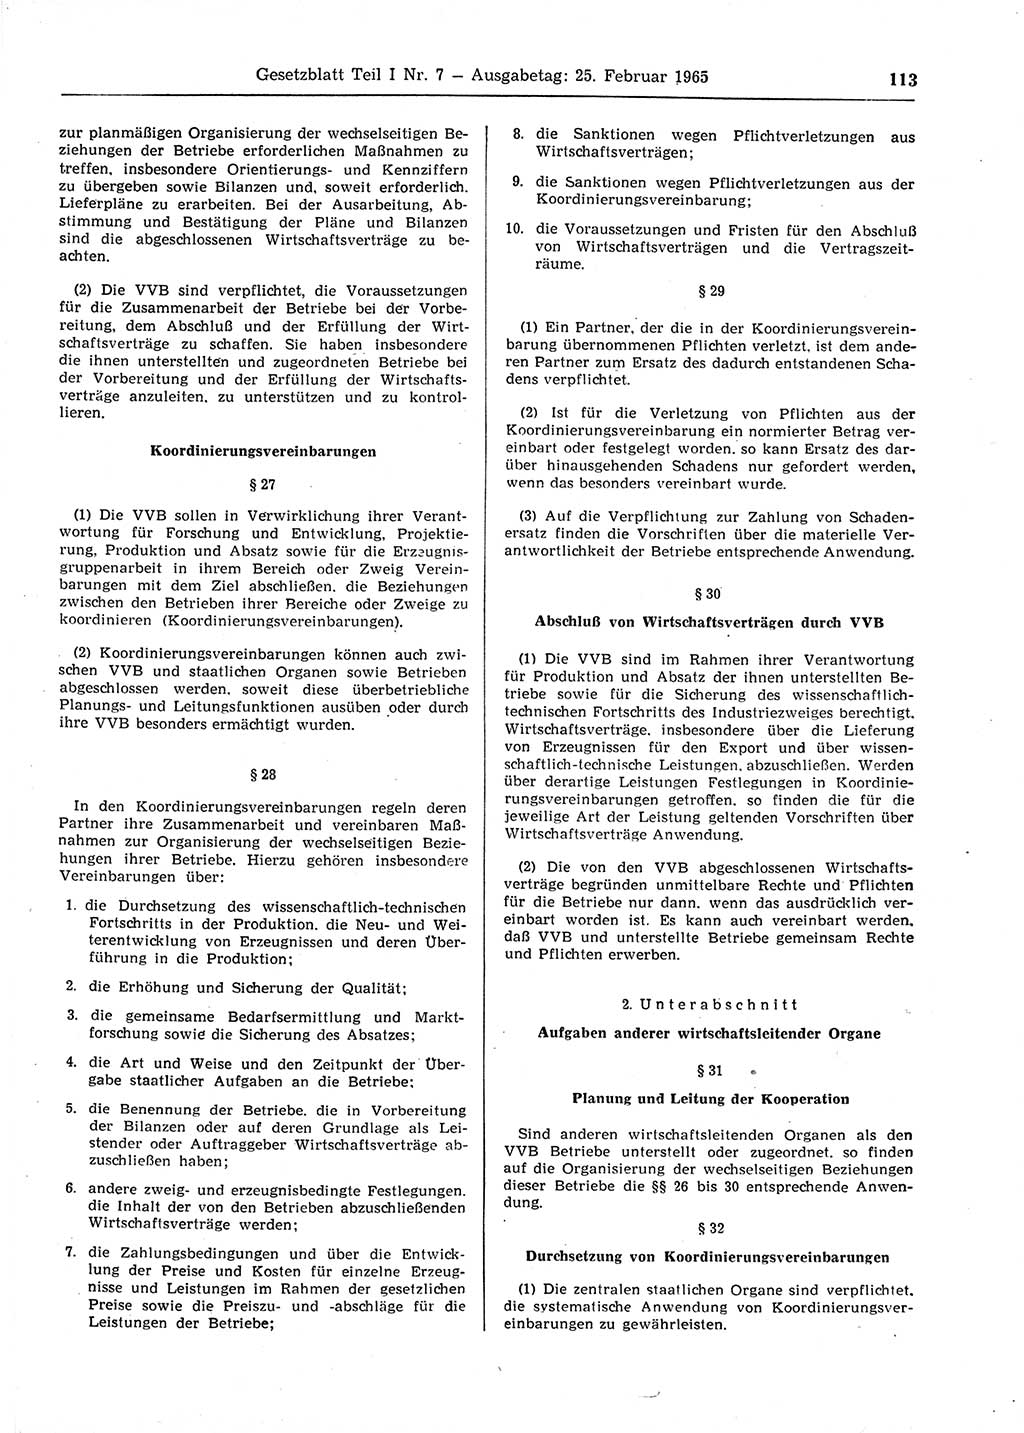 Gesetzblatt (GBl.) der Deutschen Demokratischen Republik (DDR) Teil Ⅰ 1965, Seite 113 (GBl. DDR Ⅰ 1965, S. 113)